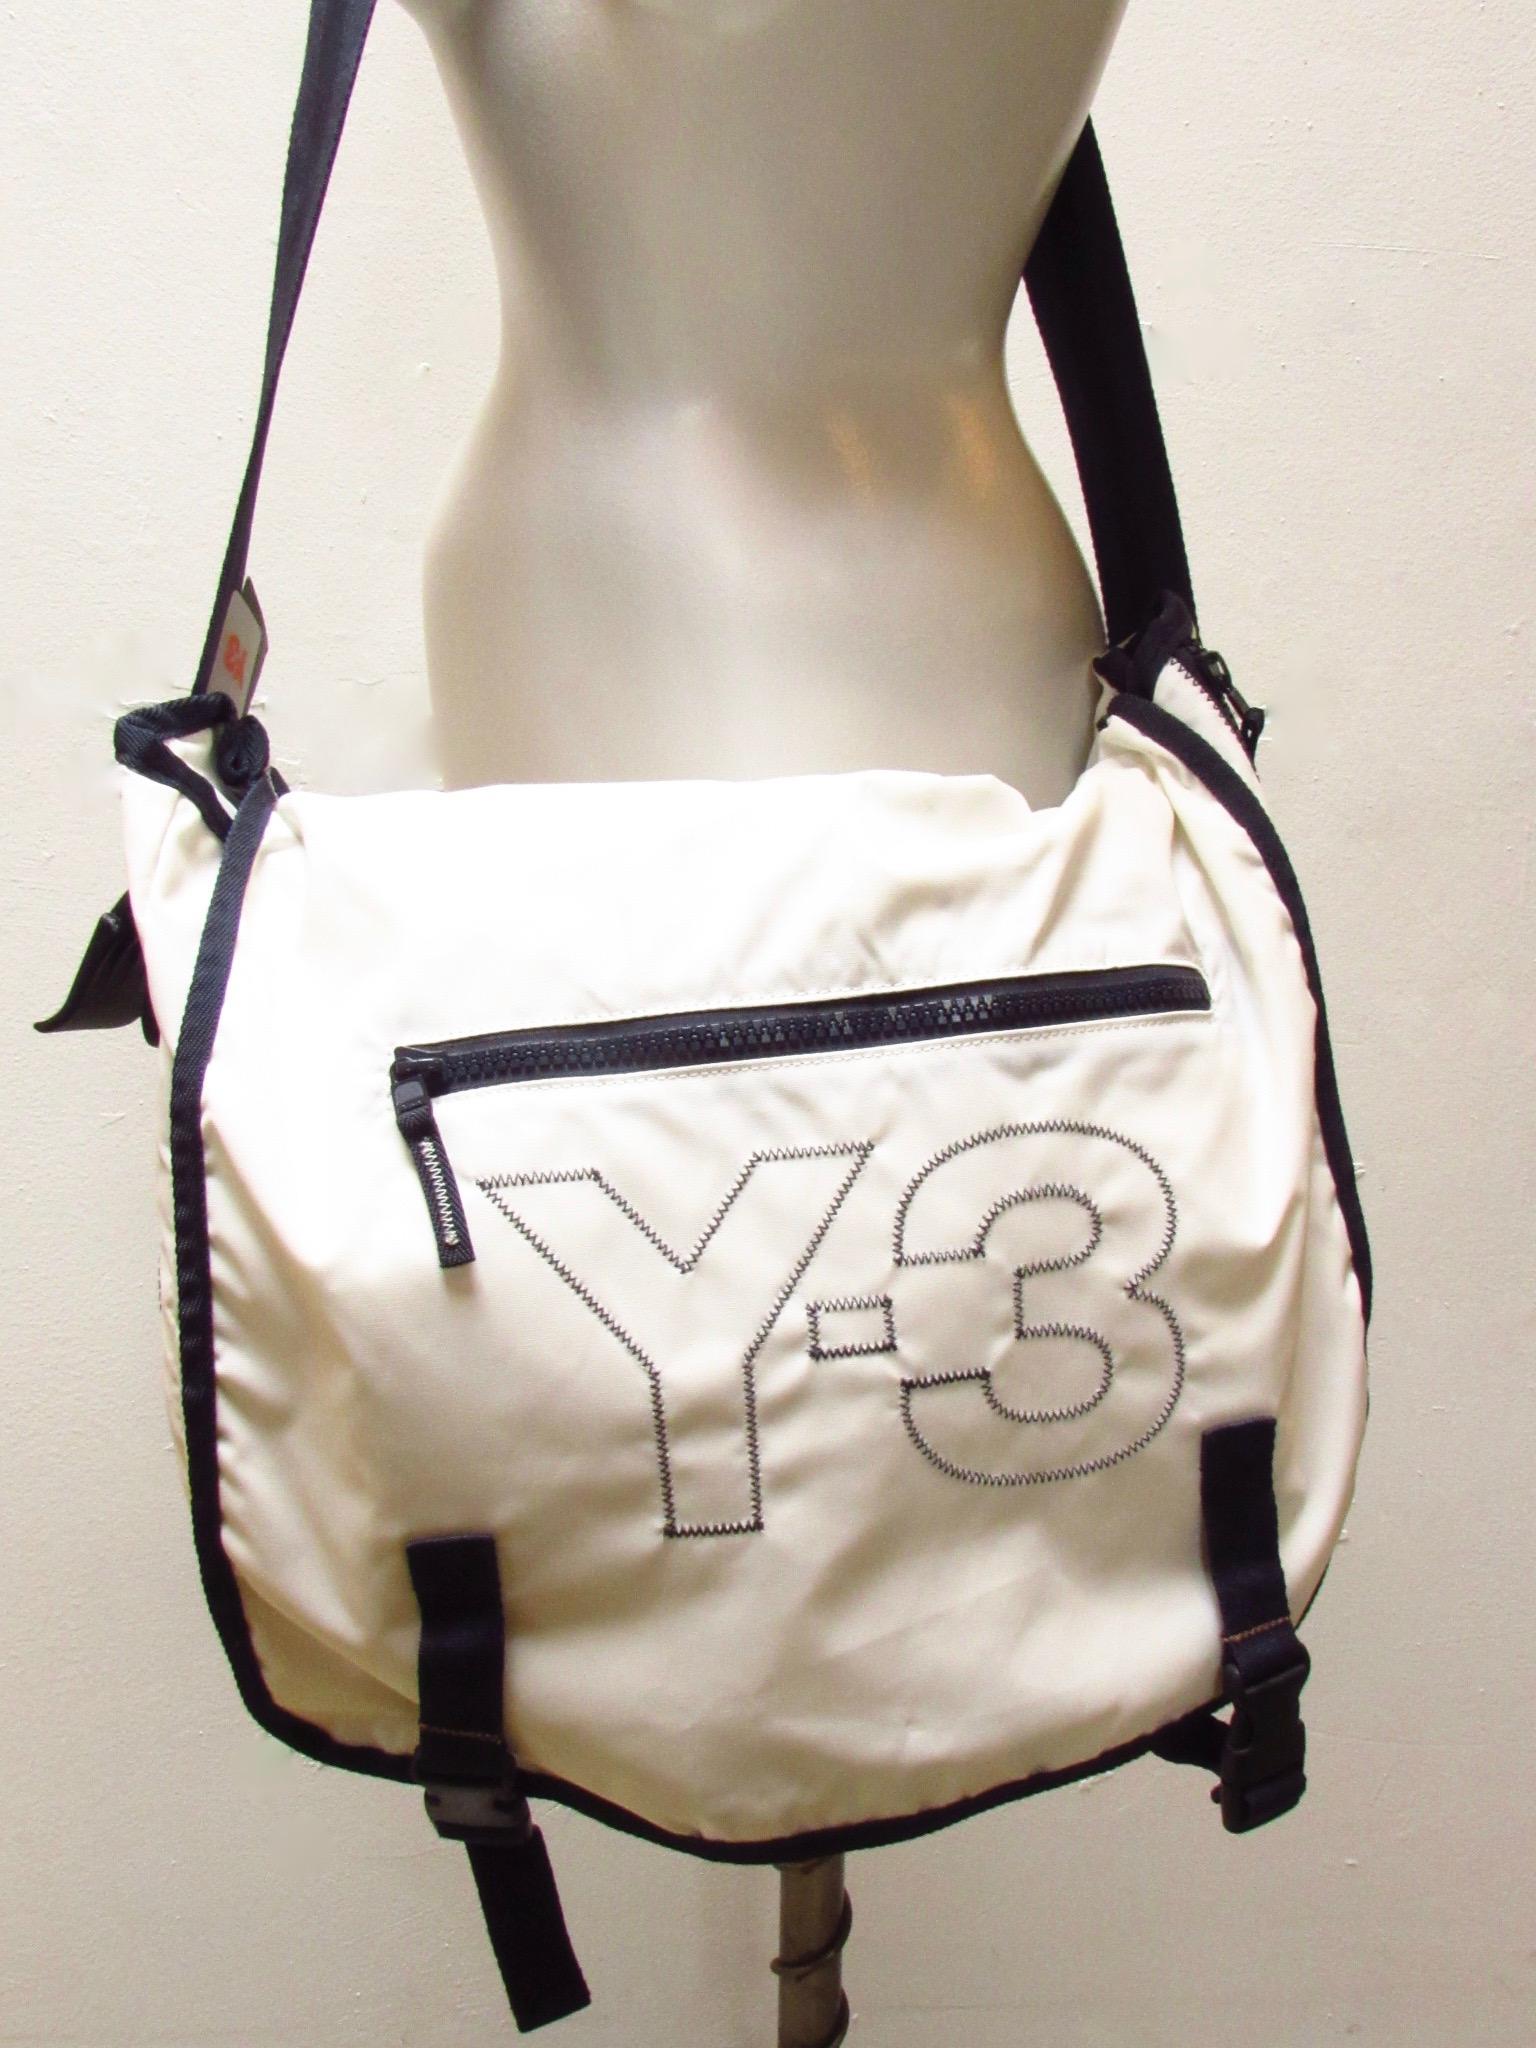 Le sac de messager en nylon blanc et bleu marine de Y-3 Yohji Yamamoto est léger et durable. Il est doté d'un rabat extérieur, avec une poche zippée, qui se fixe avec des clips. À l'intérieur, il y a plusieurs fentes pour organiser le contenu. Des